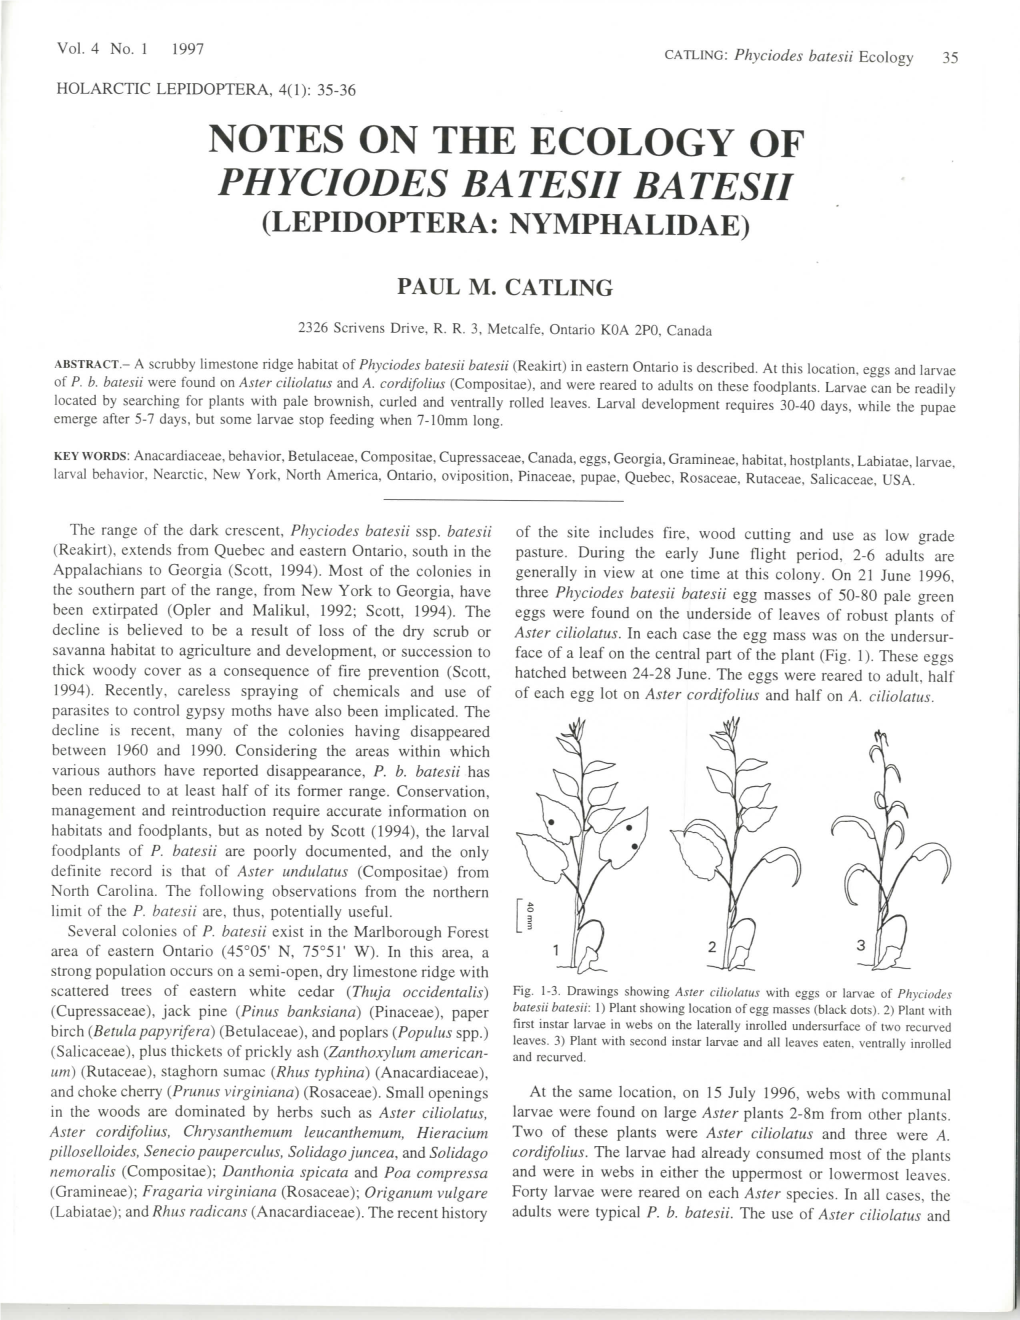 Notes on the Ecology of Phyciodes Batesii Batesii (Lepidoptera: Nymphalidae)